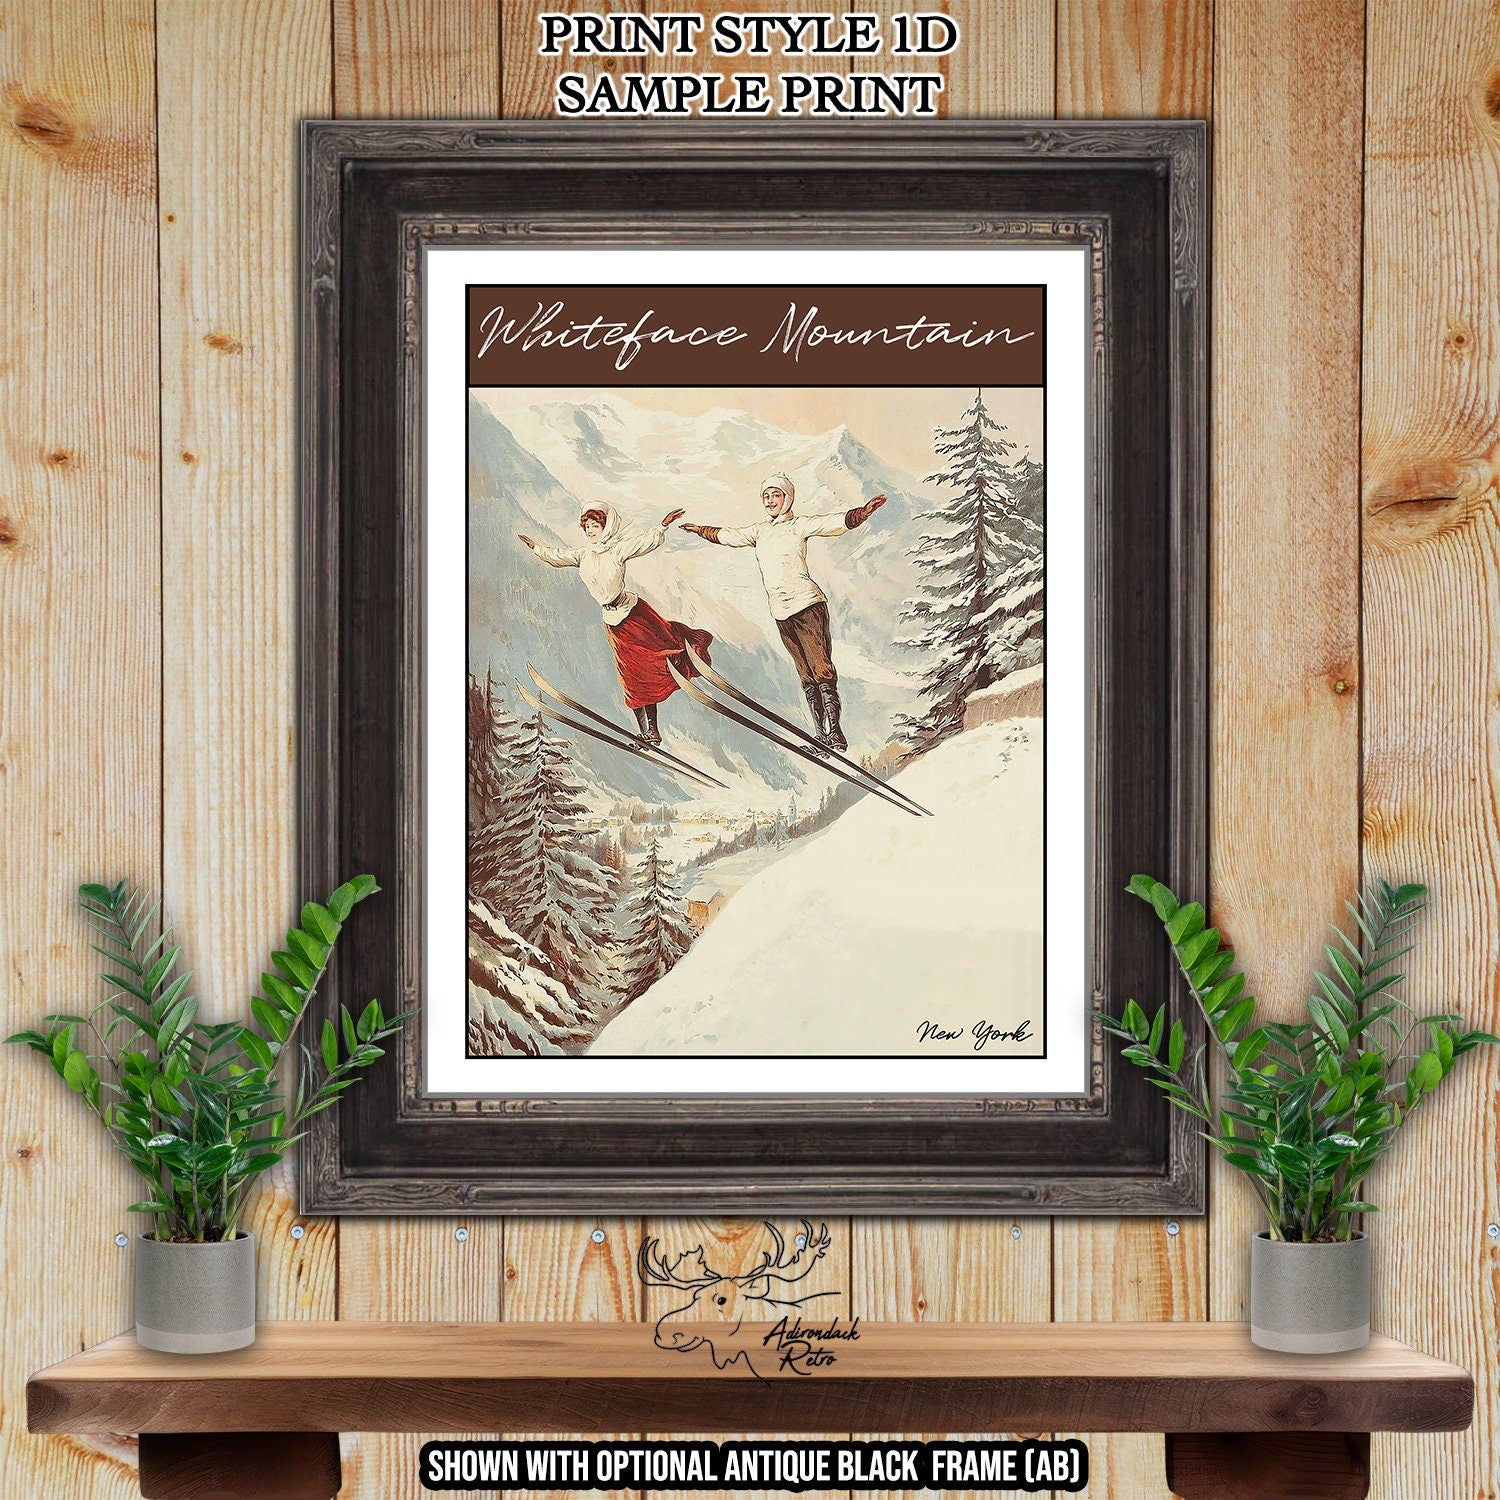 Saddleback Maine Retro Ski Resort Print